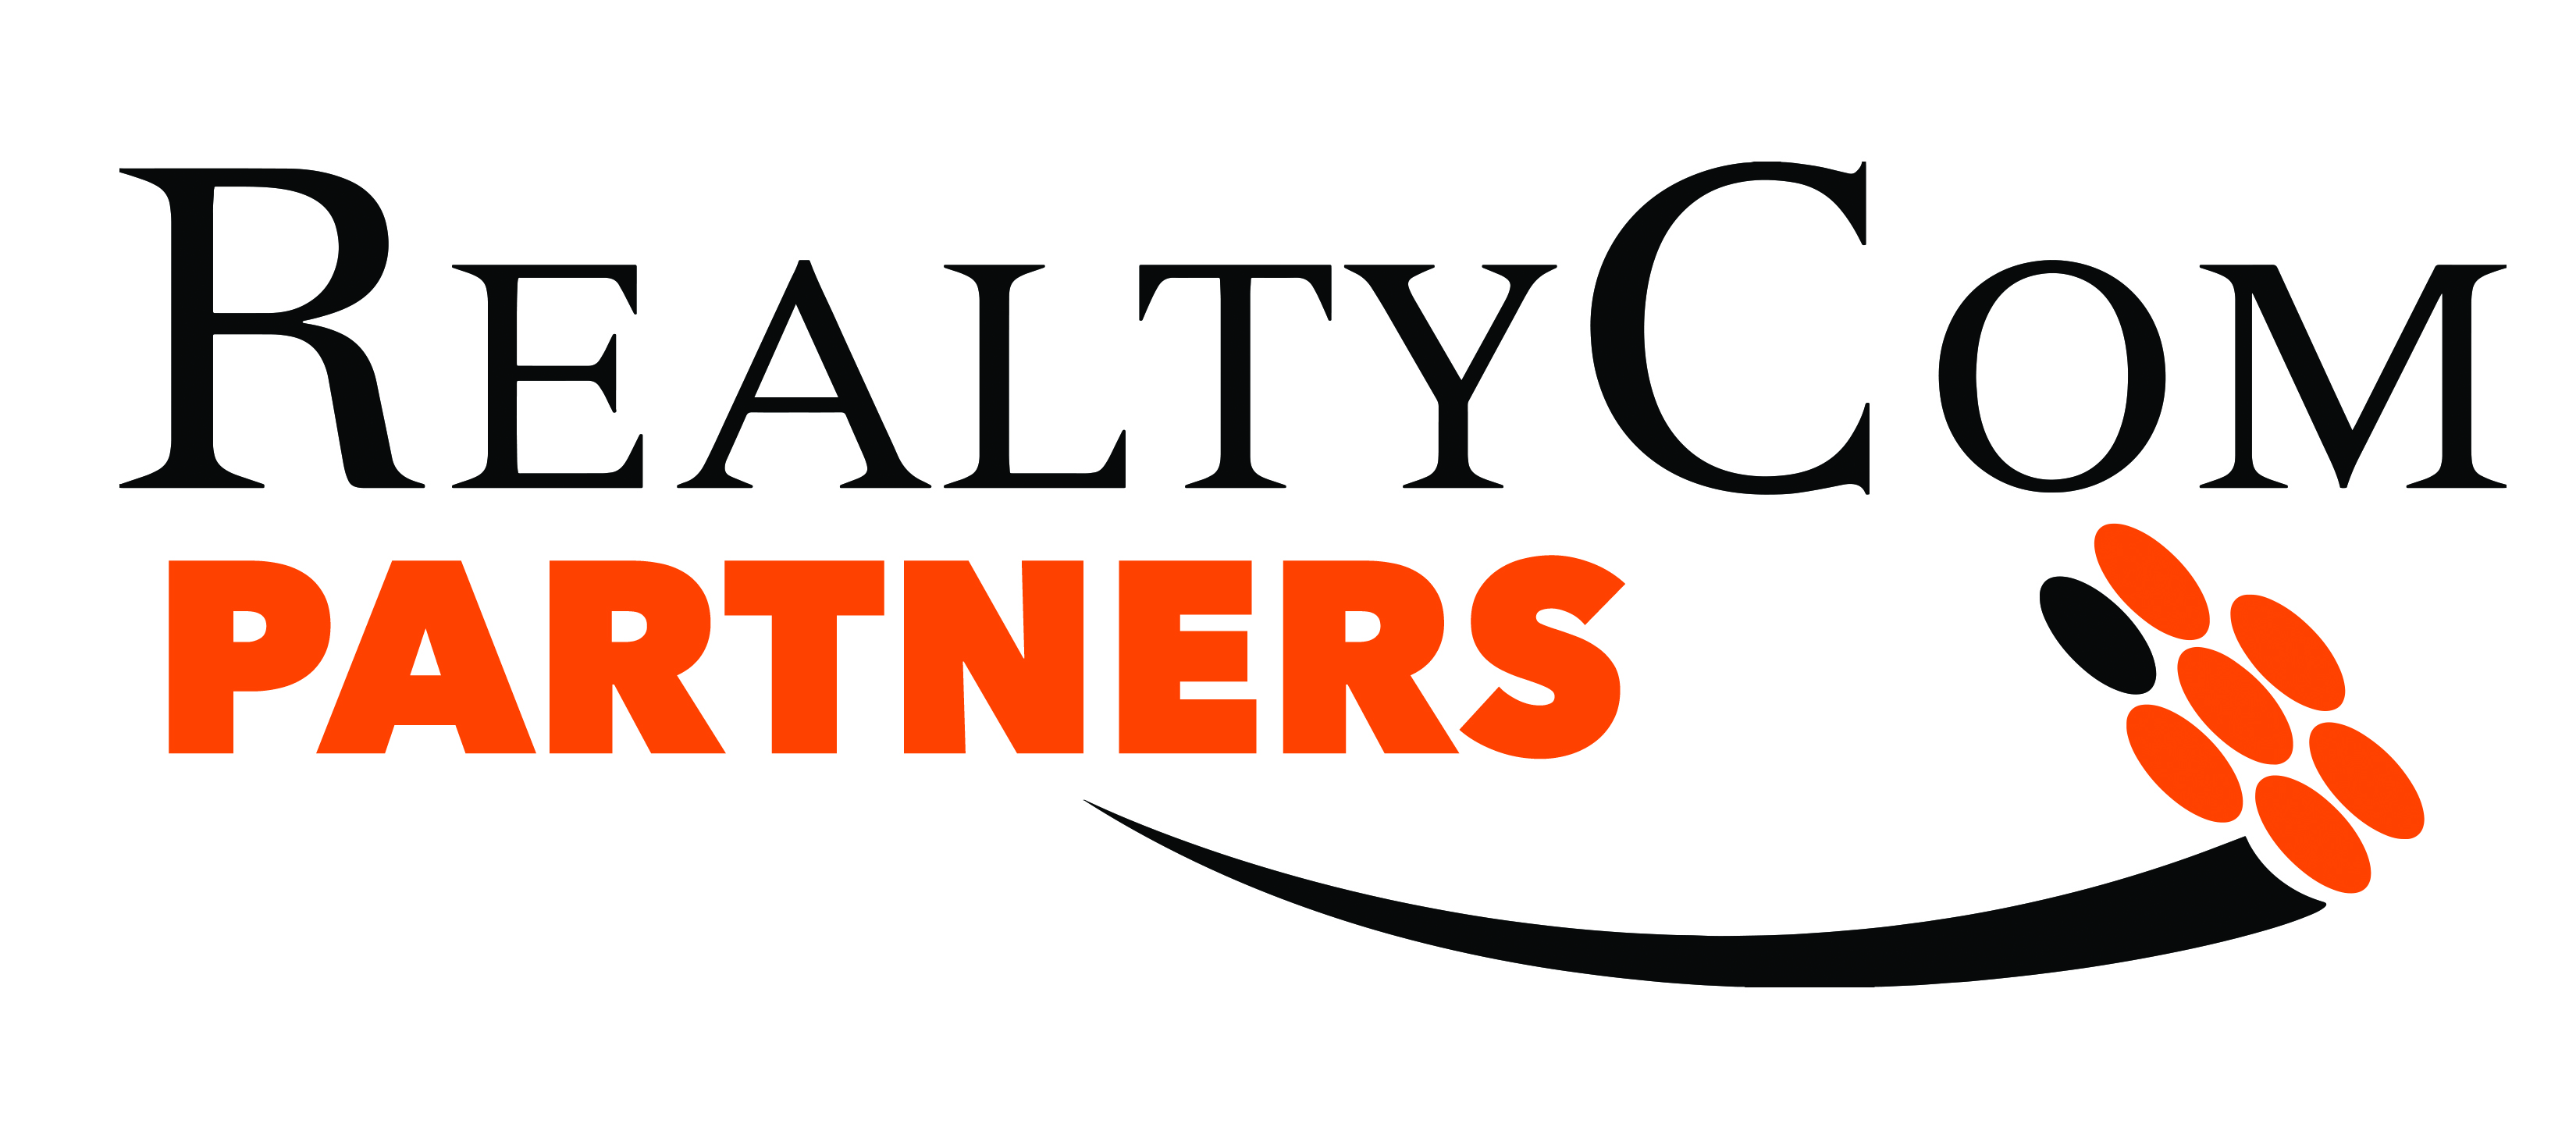 RealtyCom Partners logo